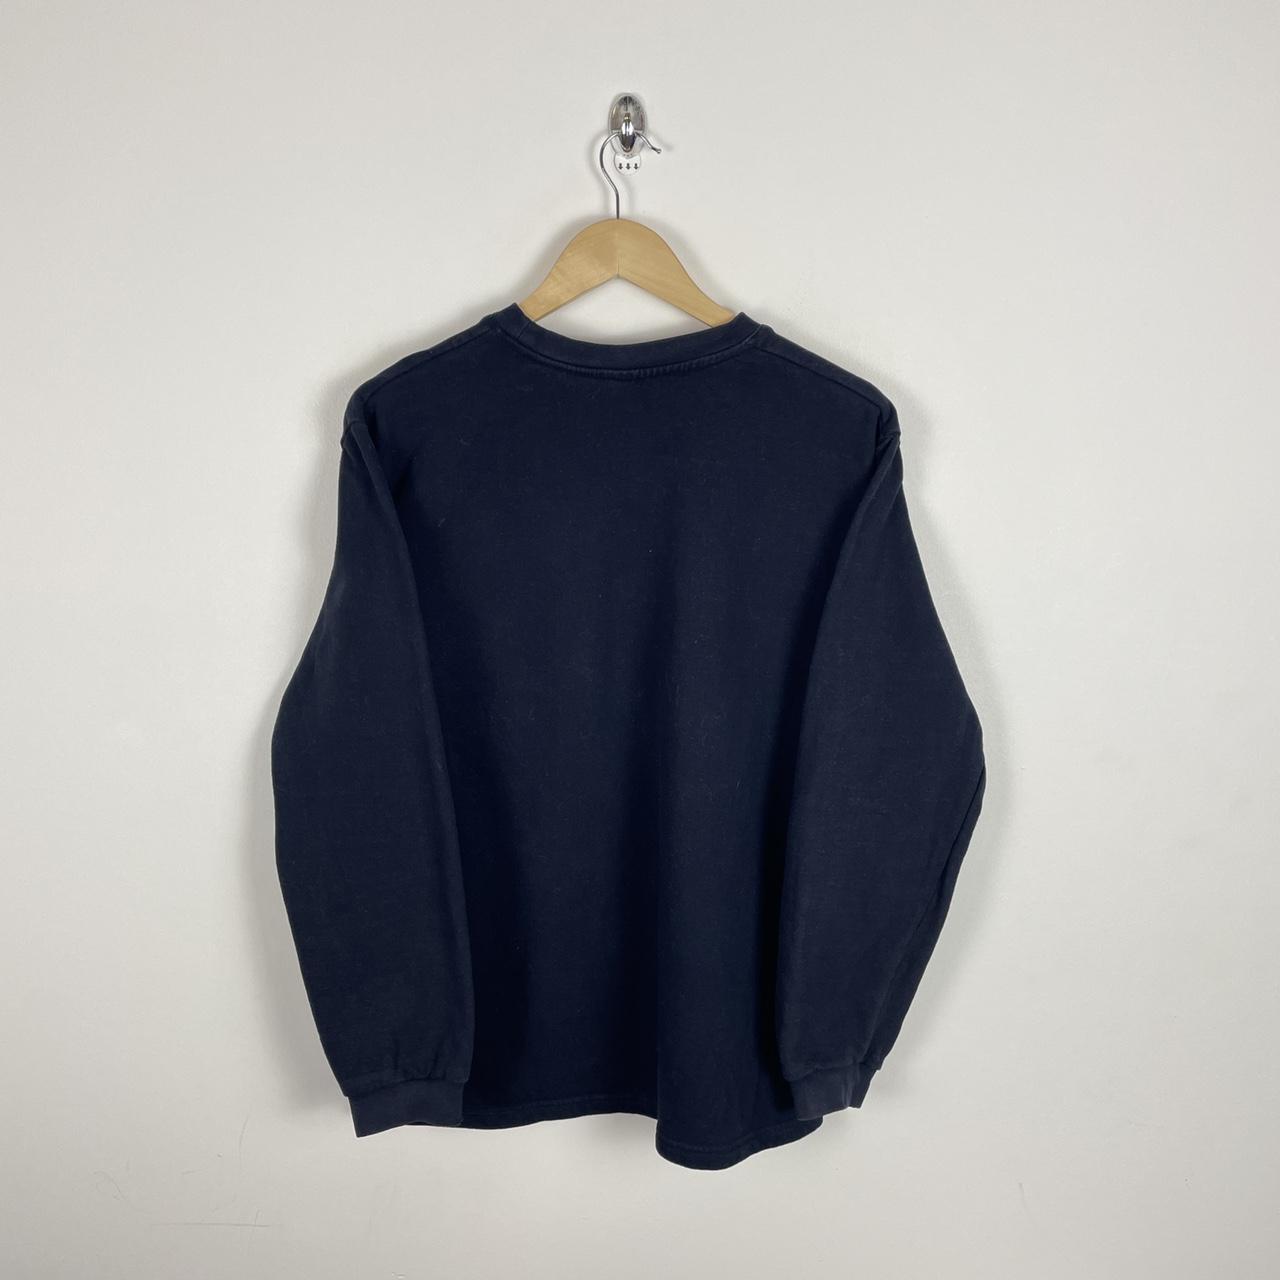 Vintage Y2K Blank Sweatshirt Black Colour Way Ladies... - Depop